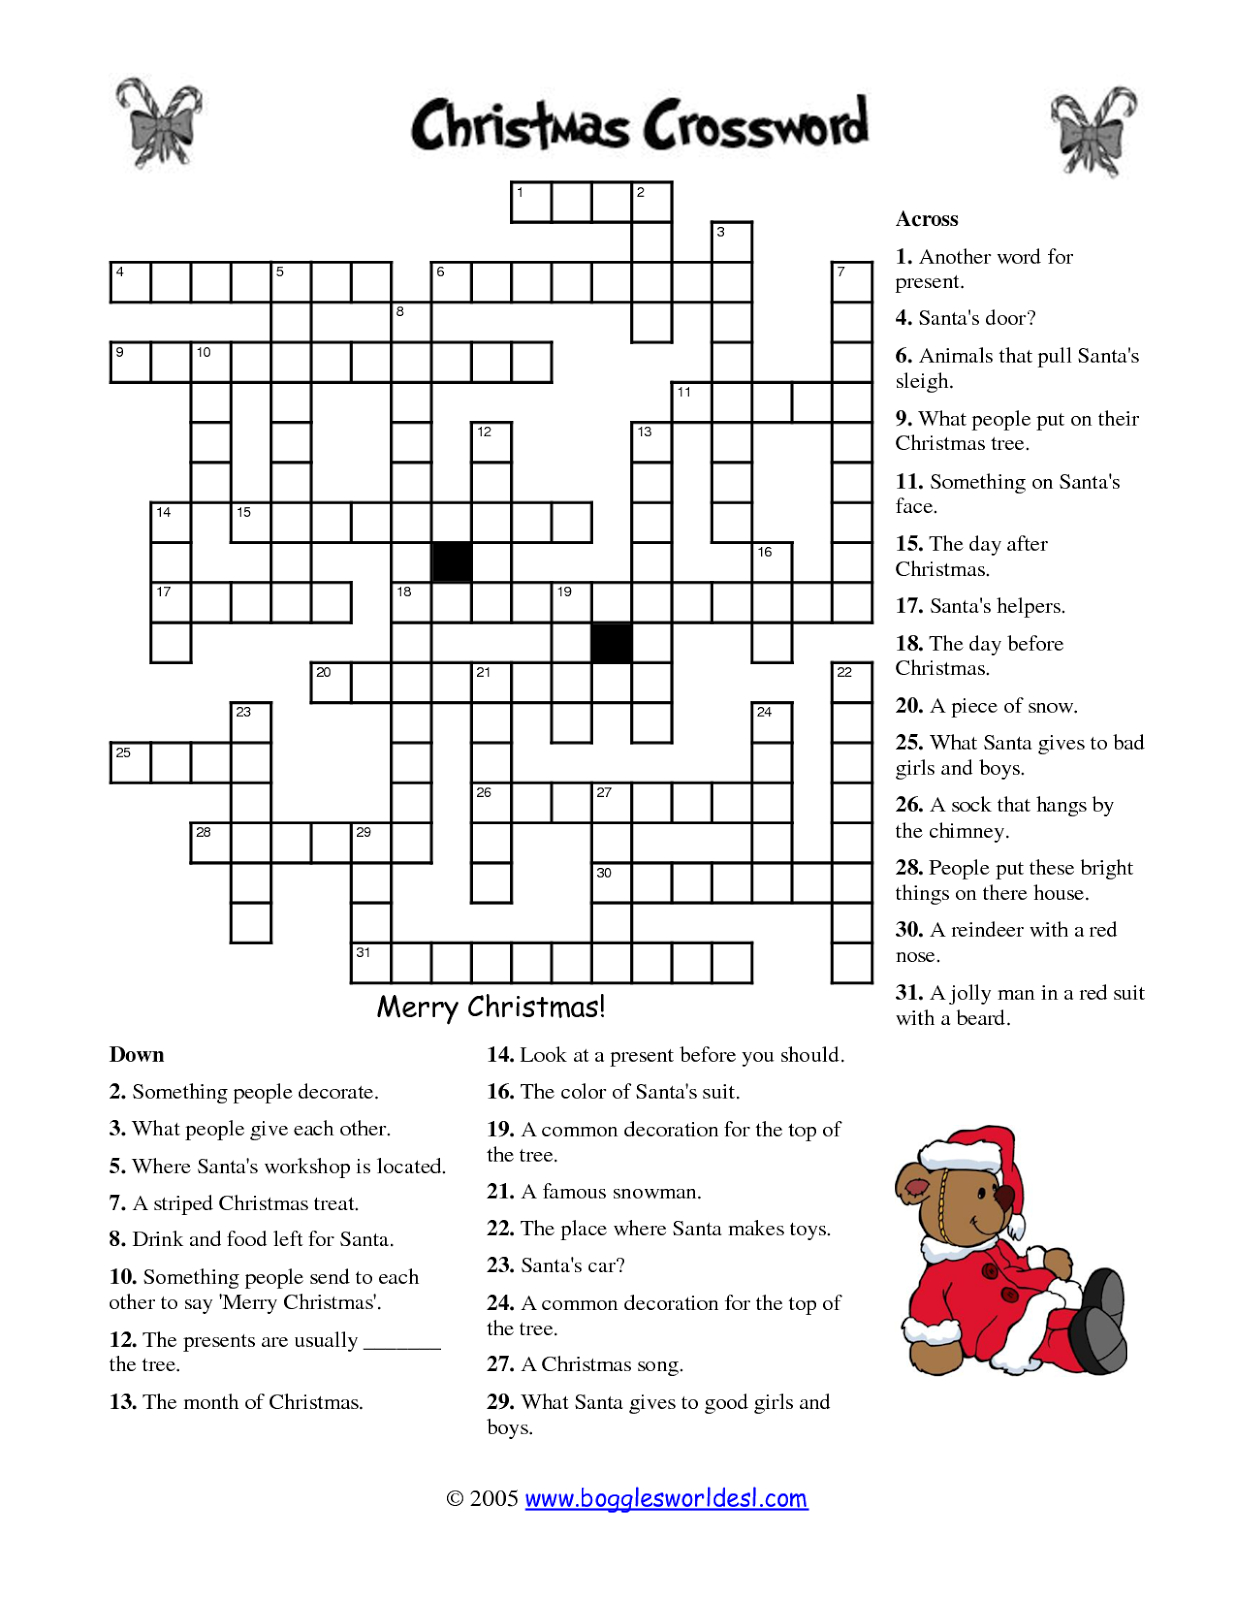 Free Printable Crossword Puzzles | M34 | Free Printable Crossword - Free Printable Christmas Puzzles